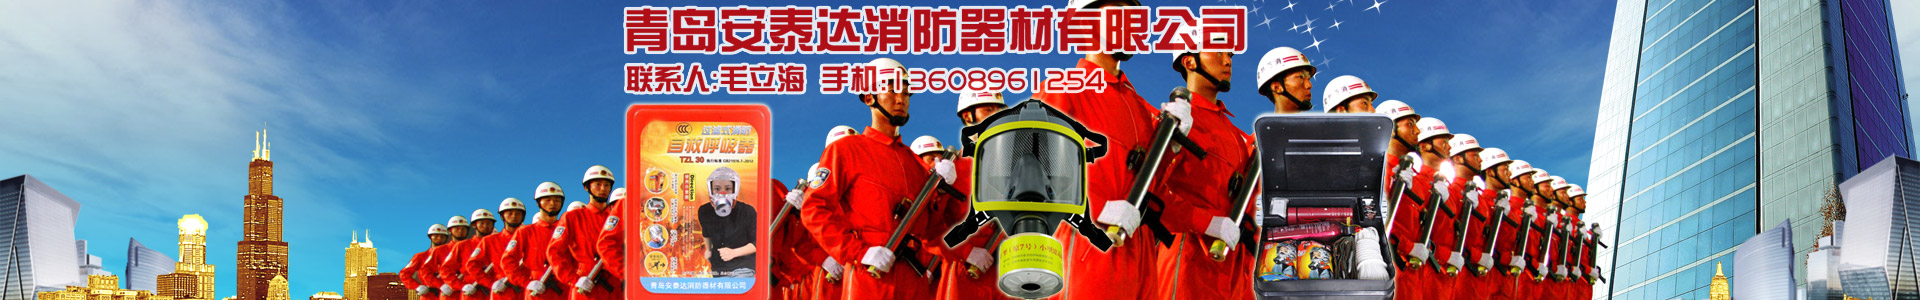 維修設備-青島安泰達消防器材有限公司-